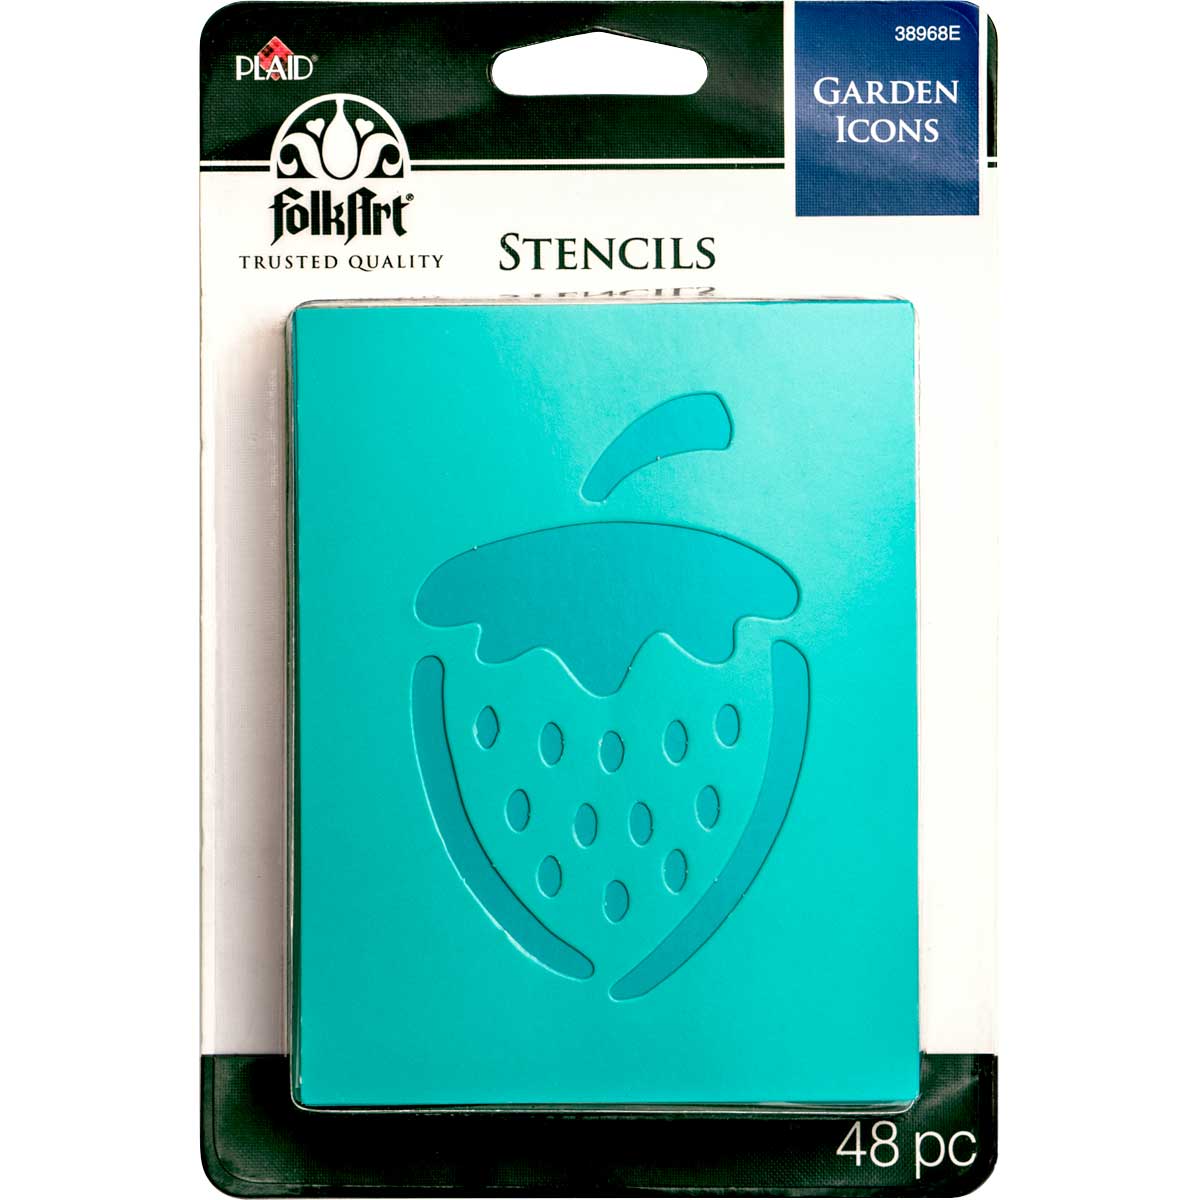 FolkArt ® Stencil Value Packs - Garden Icons - 38968E